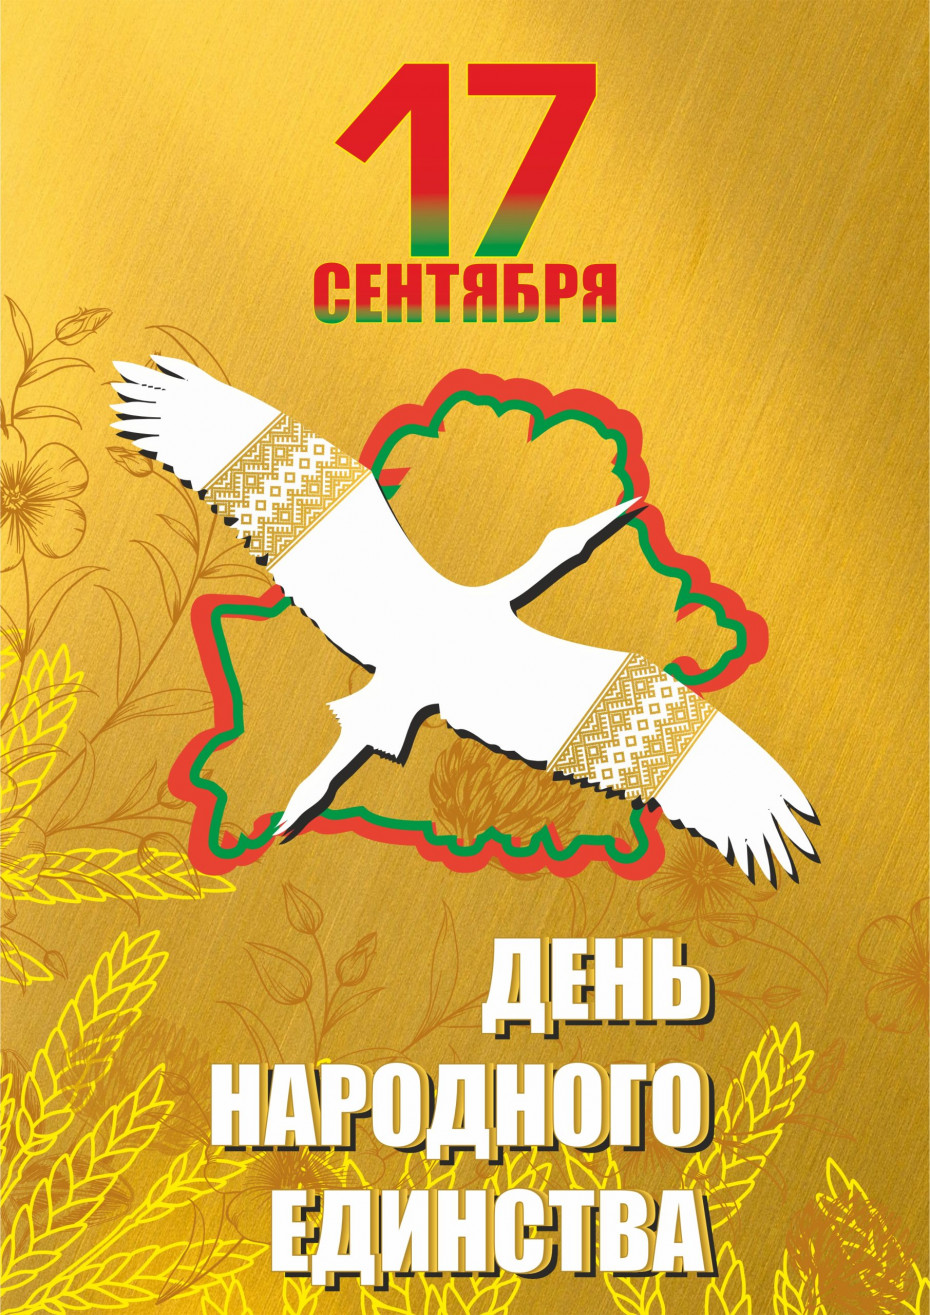 17 сентября наша страна празднует День народного единства